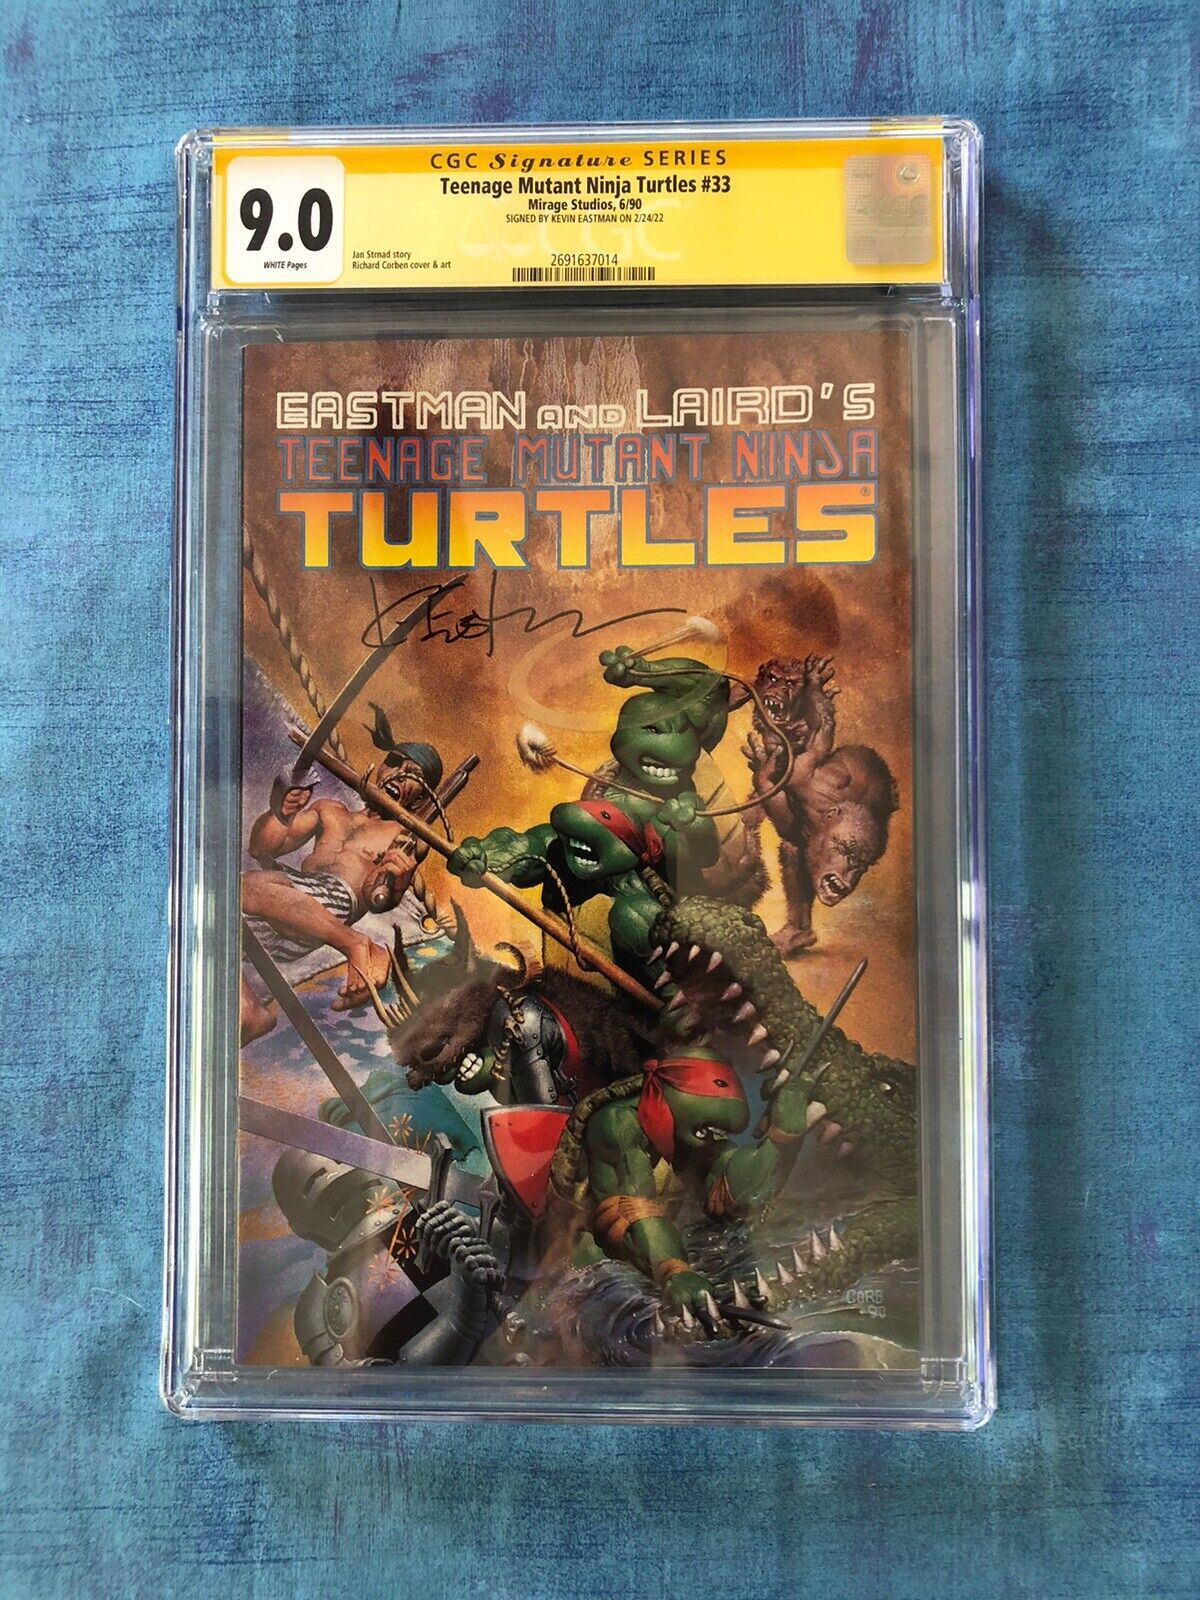 Teenage Mutant Ninja Turtles #33 - 1990 - CGC S.S. 9.0 - Signed By Kevin Eastman